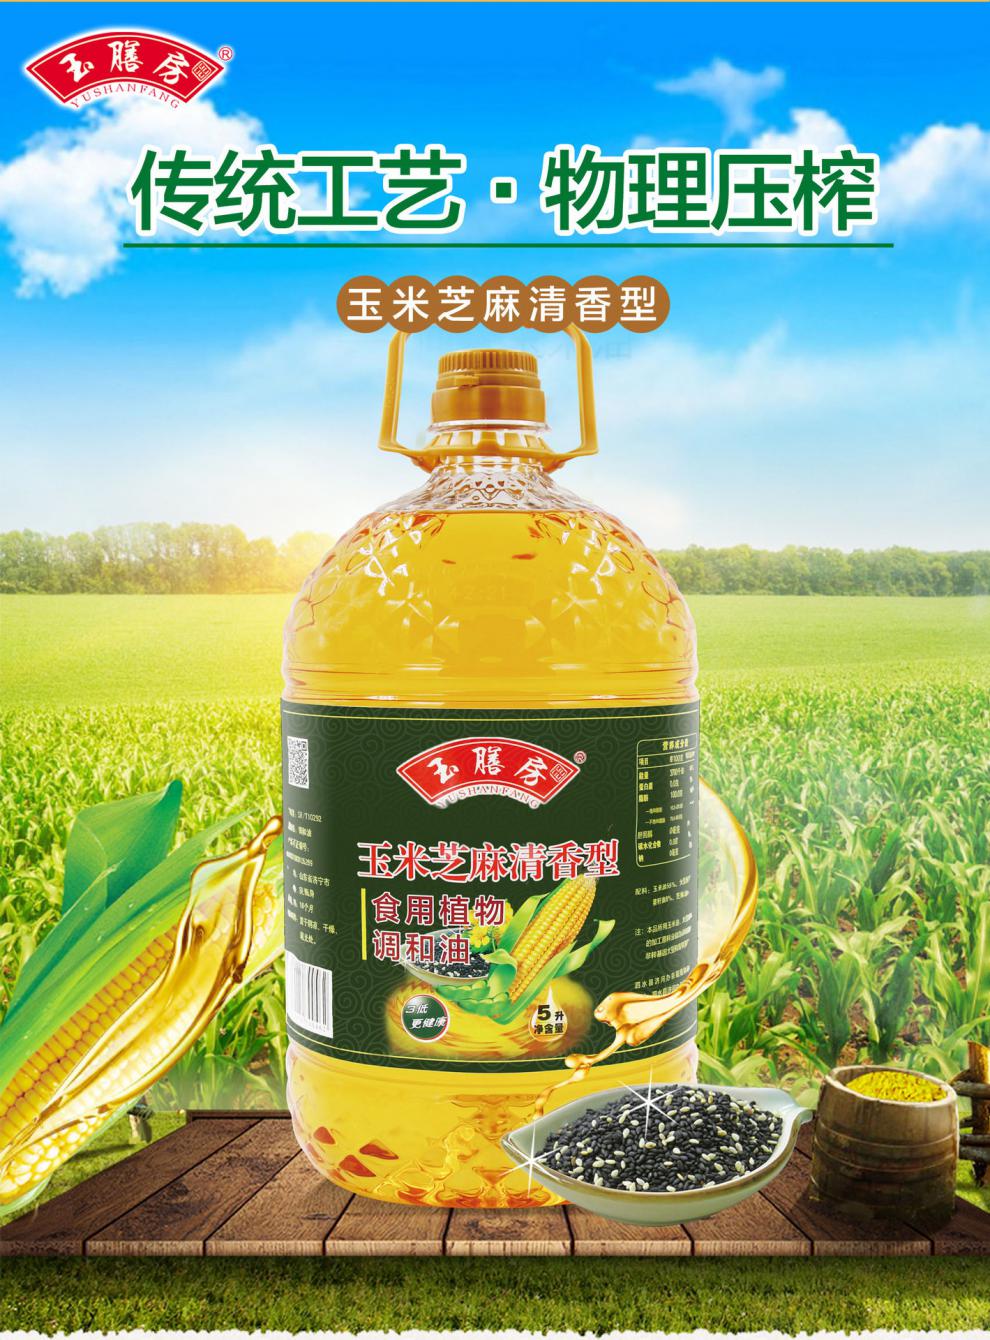 本公司产品主要有花生油,玉米油,菜籽油,大豆油      玉米芝麻